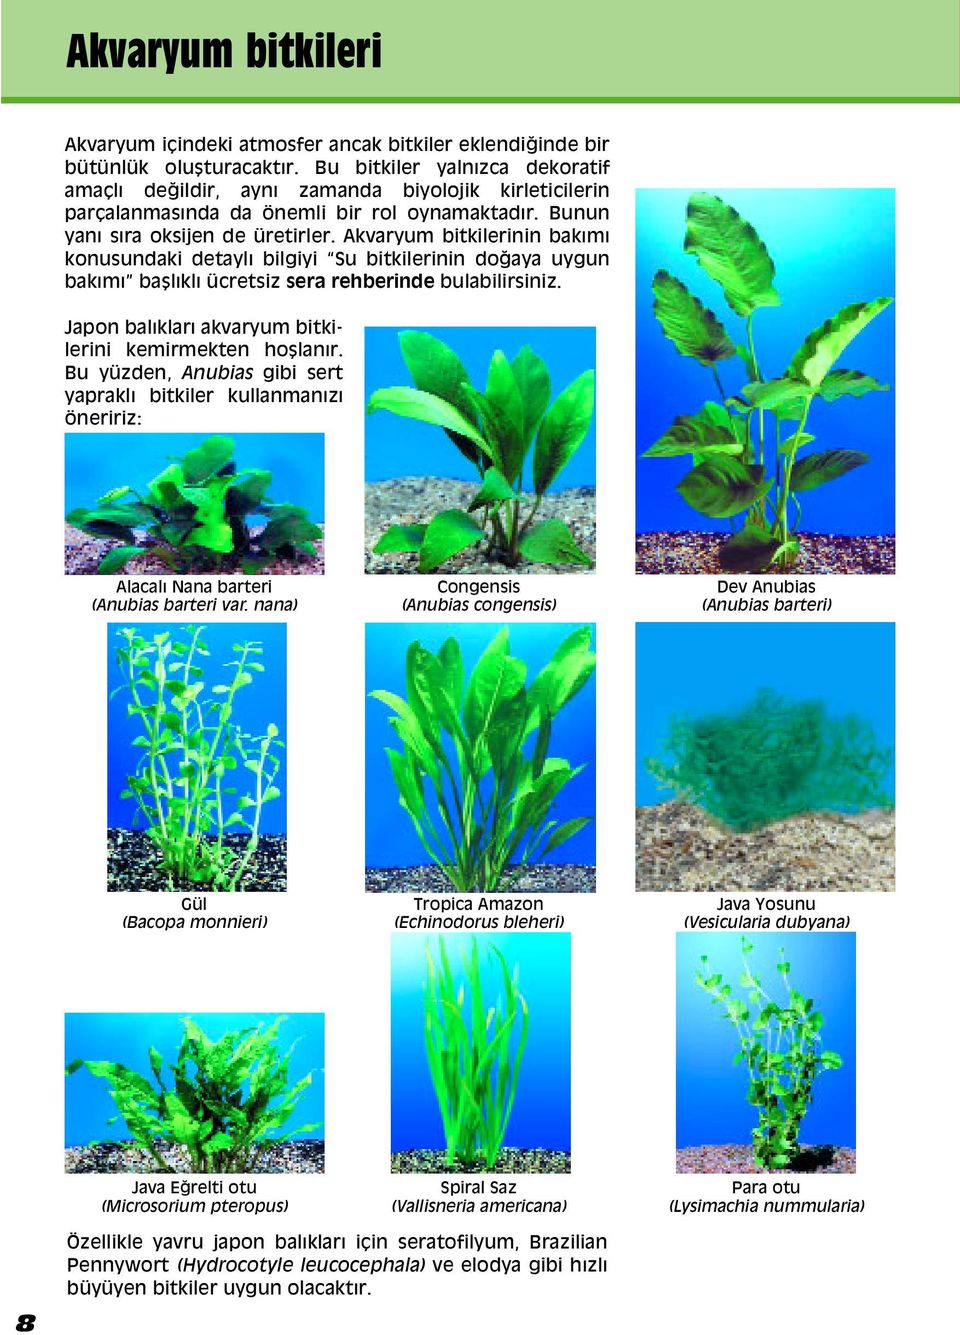 Akvaryum bitkilerinin bak m konusundaki detayl bilgiyi Su bitkilerinin doappleaya uygun bakımıω ba l kl ücretsiz sera rehberinde bulabilirsiniz.